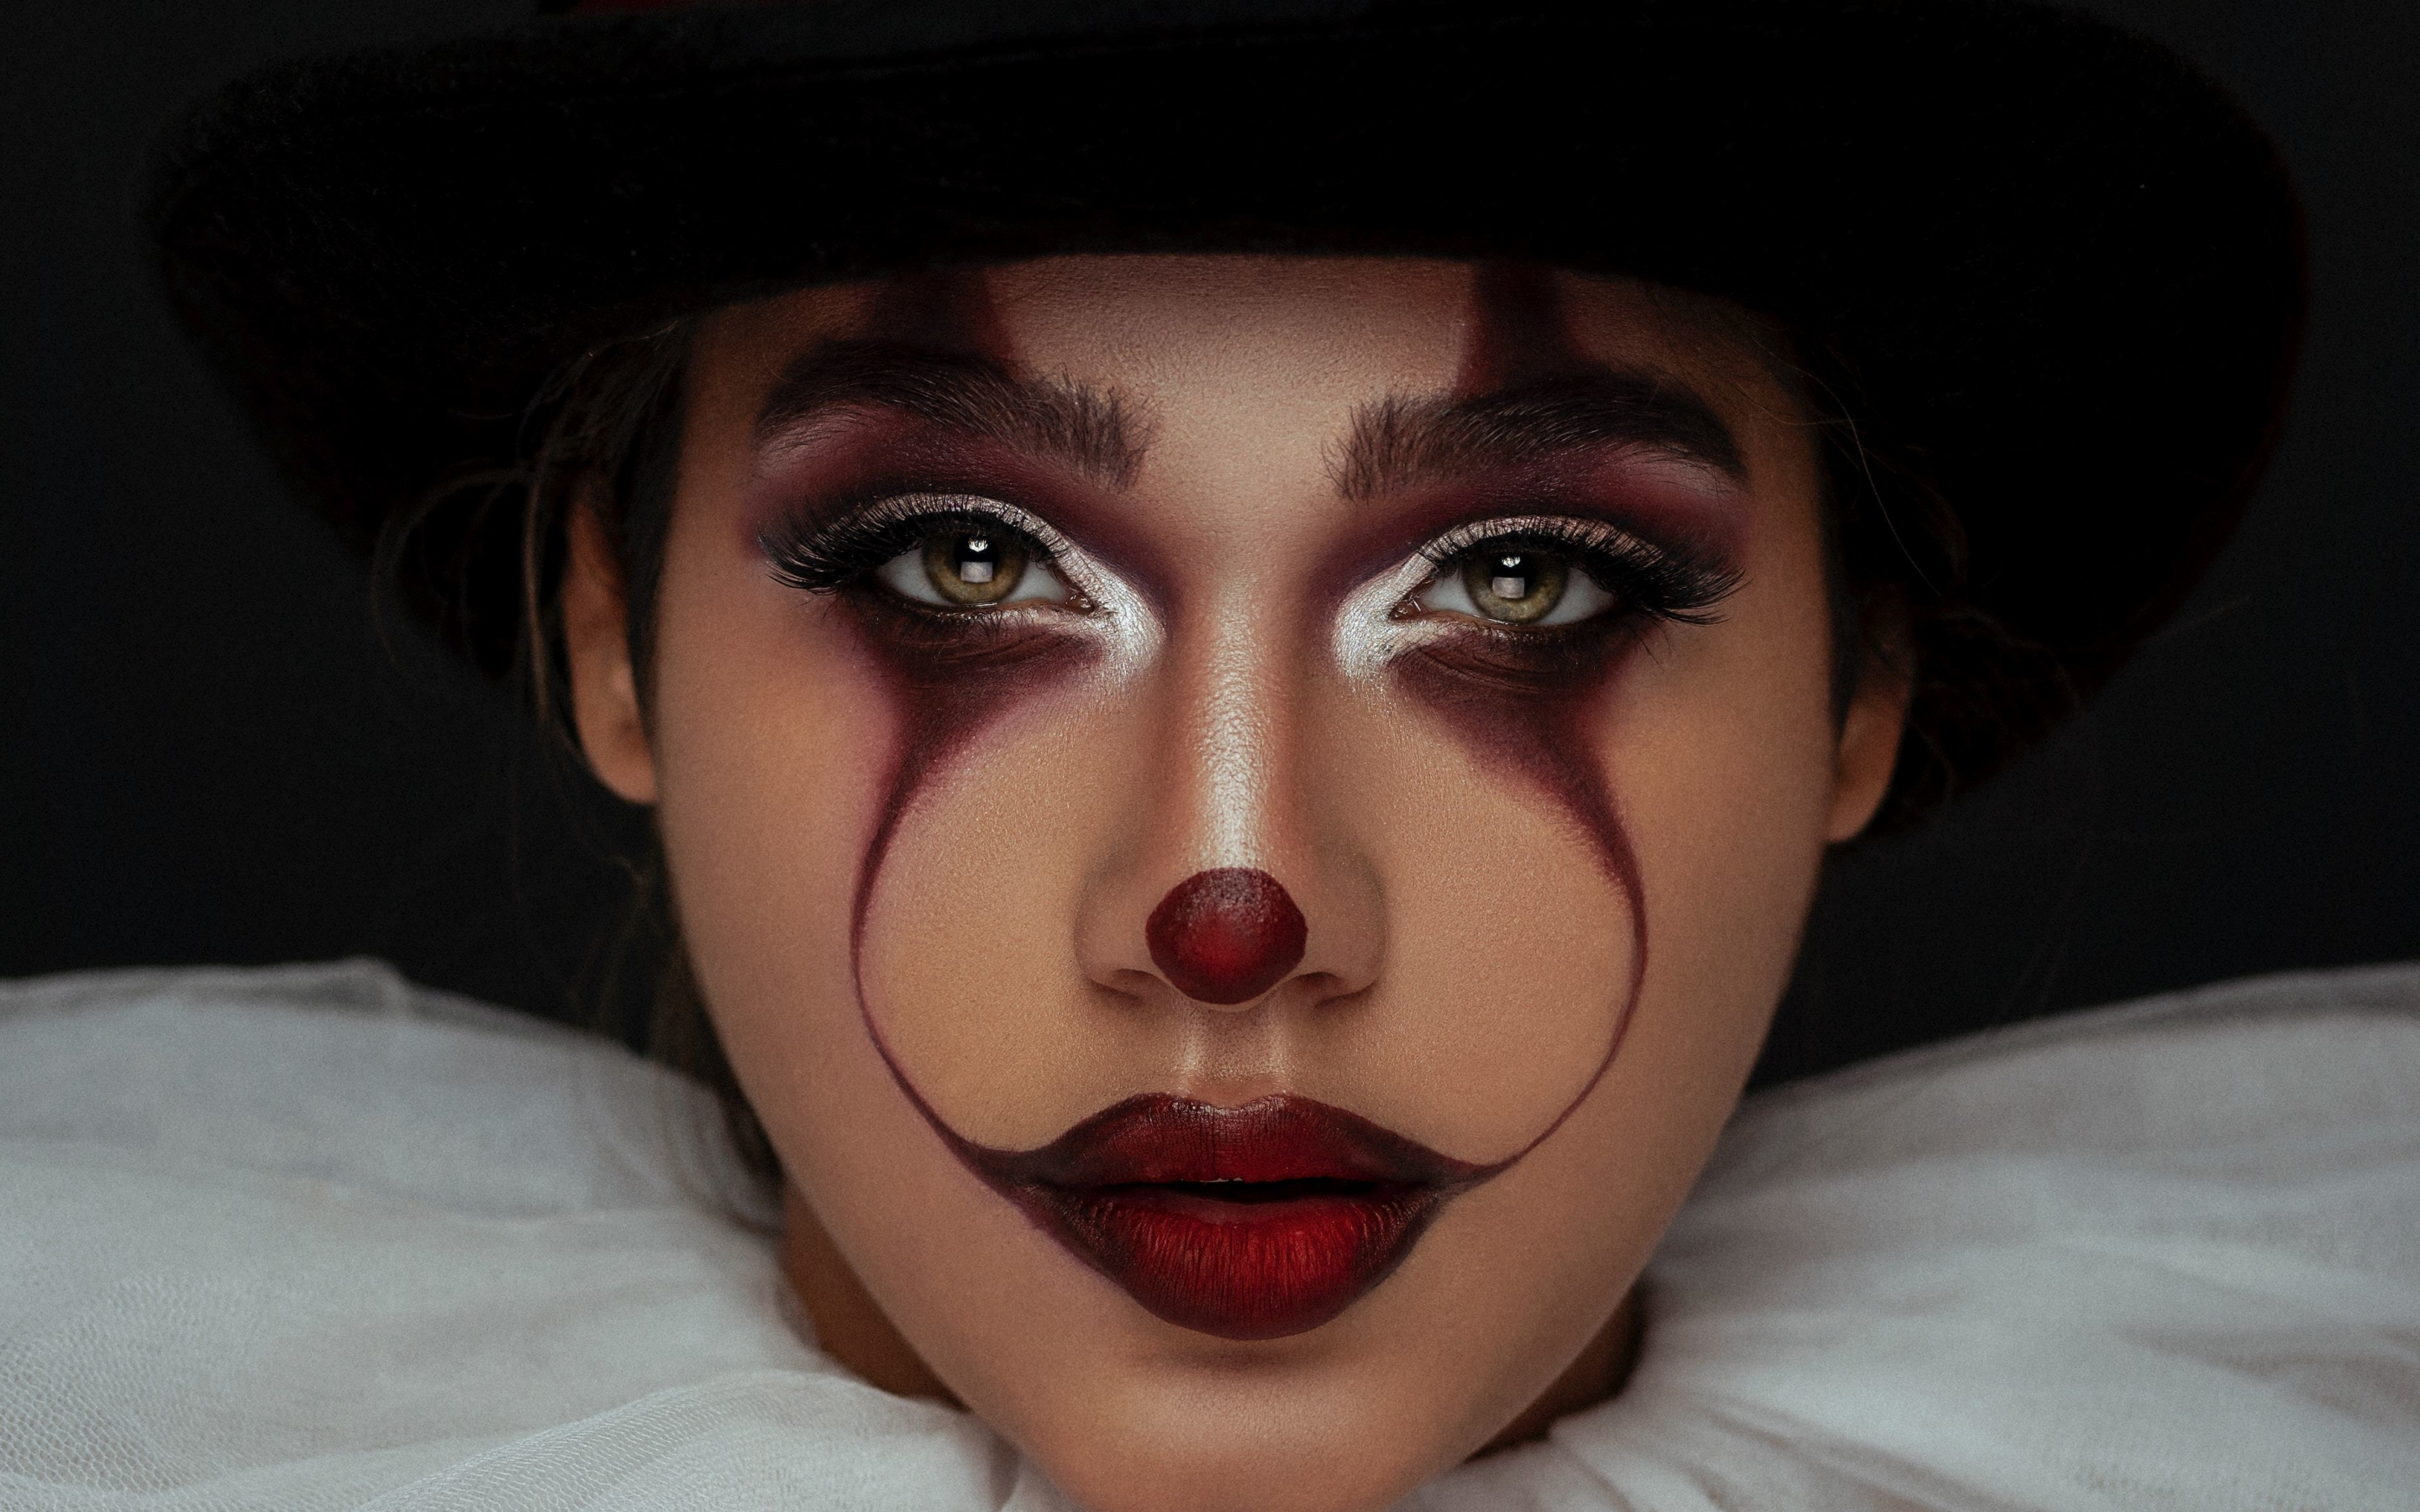 Woman model, joker, makeup, 2880x1800 wallpaper